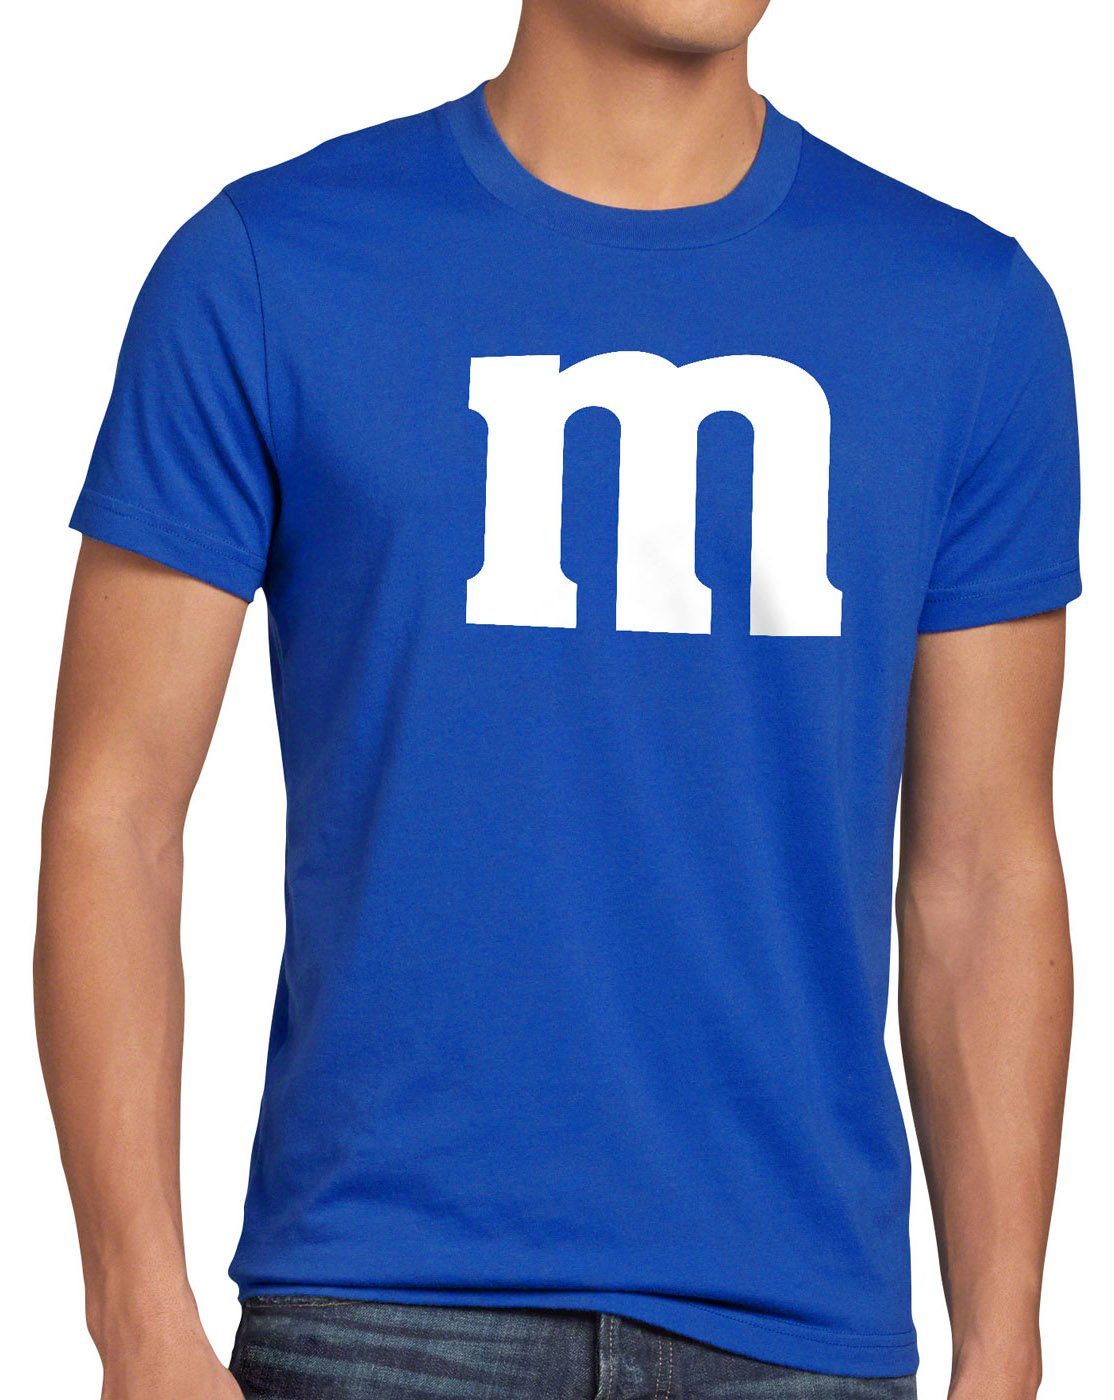 style3 Print-Shirt Herren T-Shirt Fun Umzug Fasching Kostüm Gruppenkostüm Verkleidung blau m Karneval